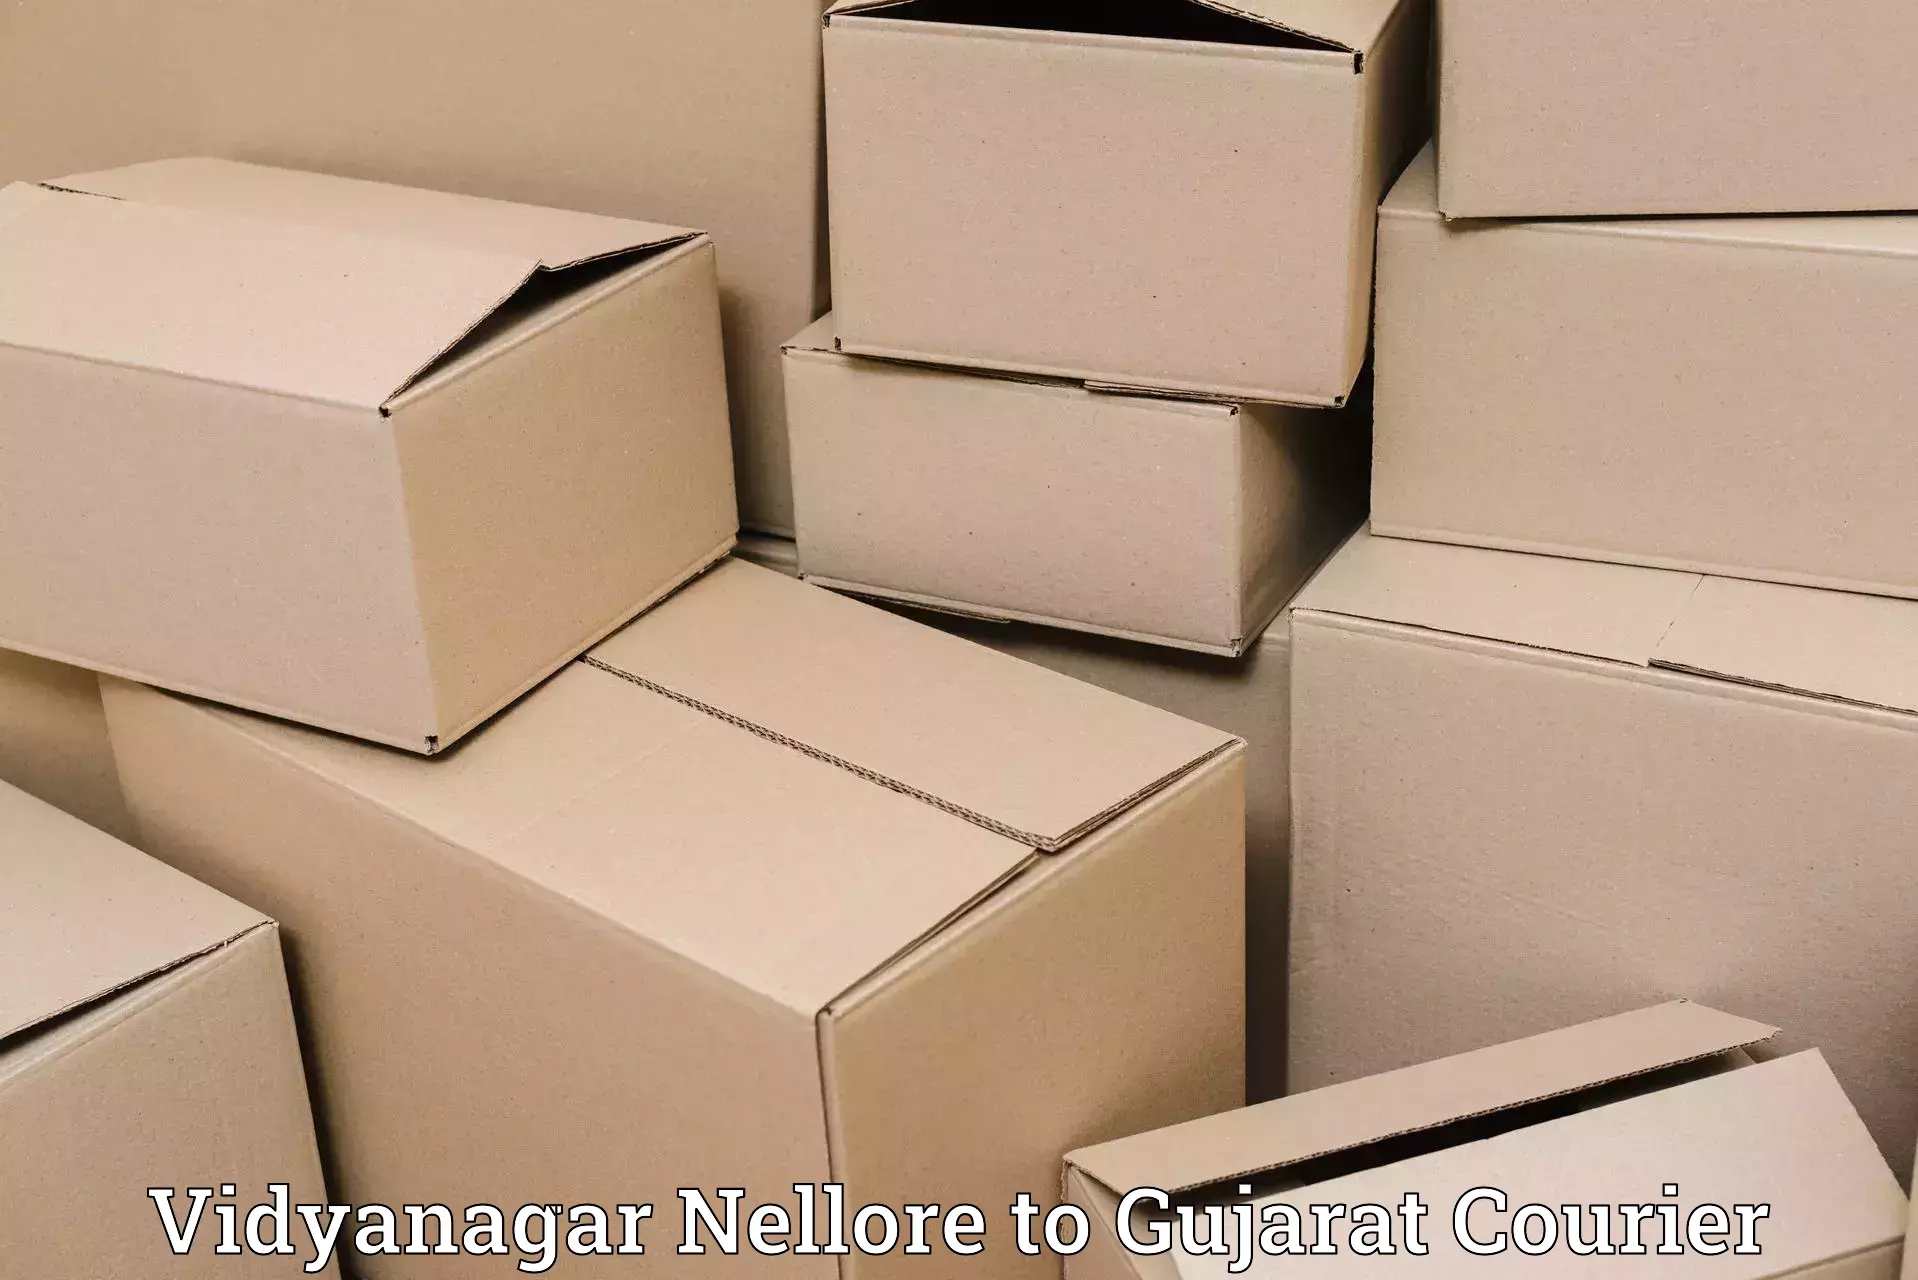 Luggage transport schedule Vidyanagar Nellore to Gujarat